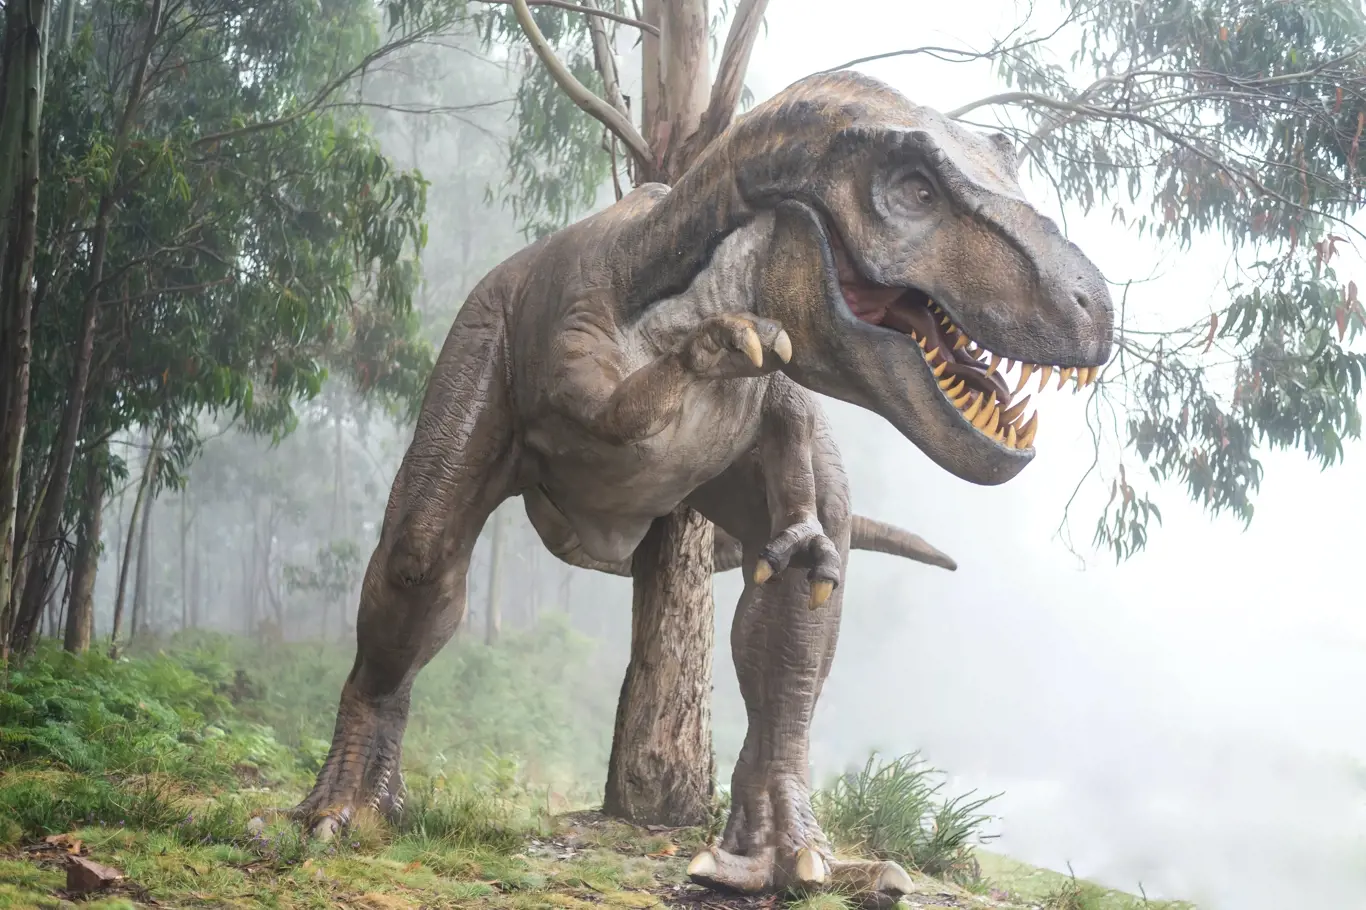 Jak zjistil nový výzkum, největší T-rex byl asi ještě o 70 % větší než Scotty